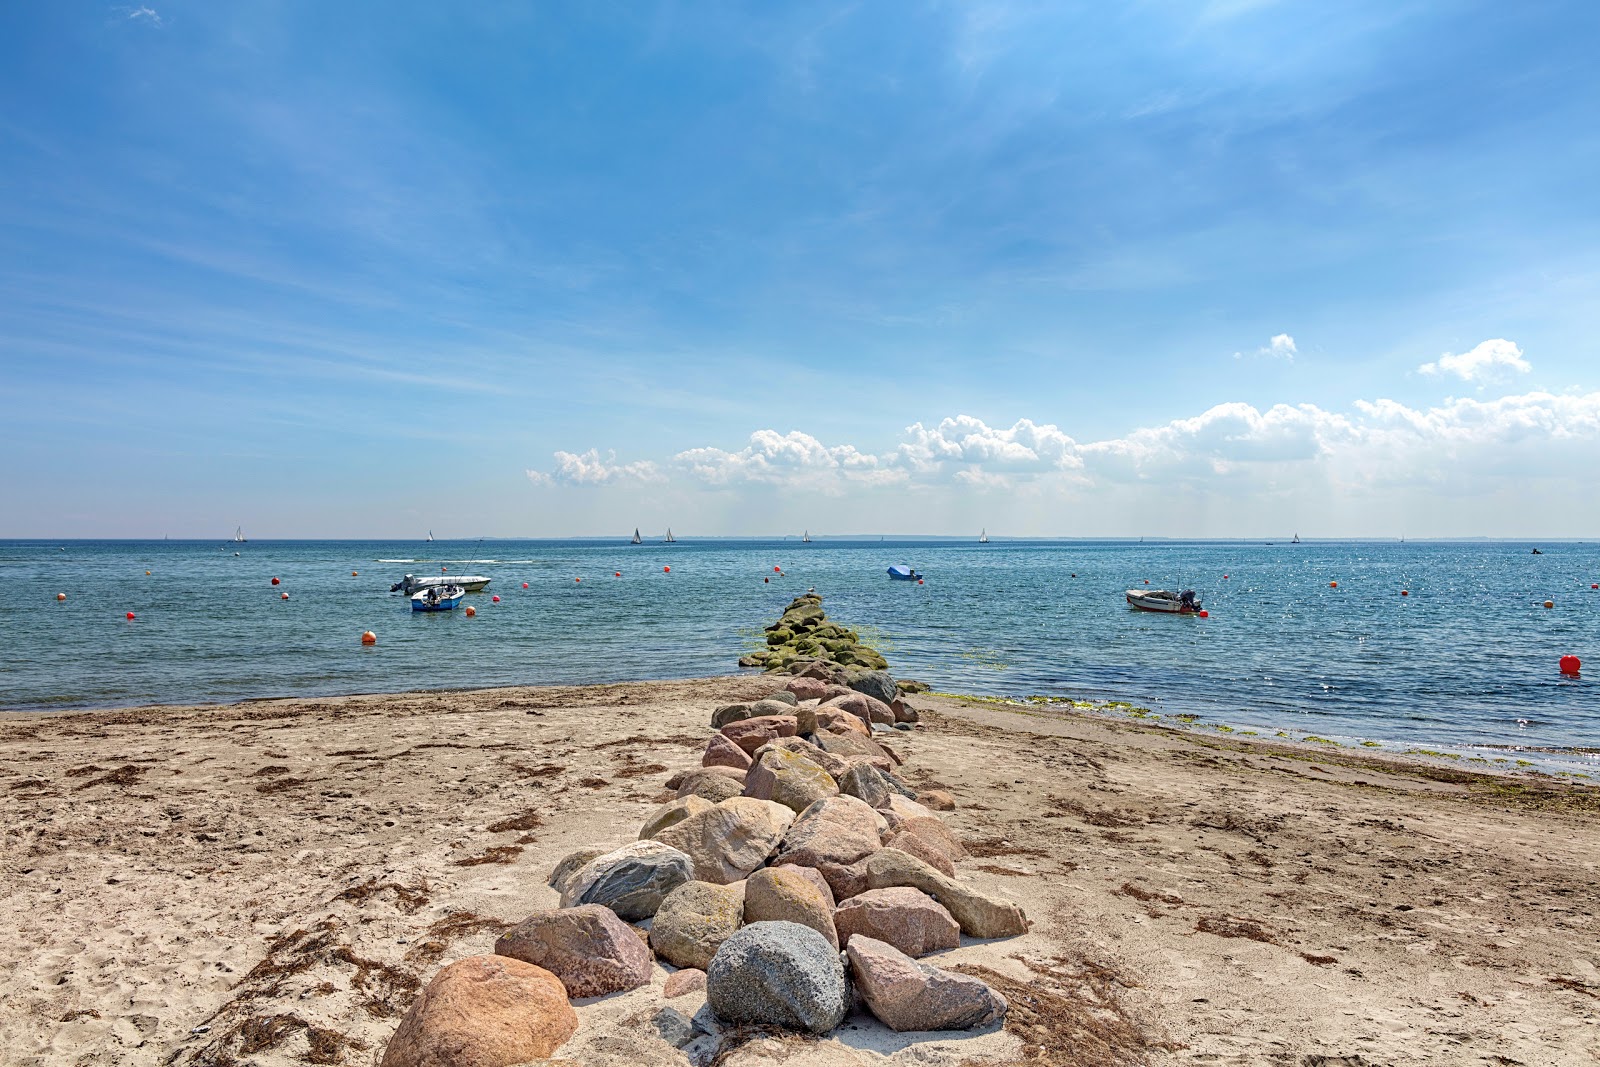 布利斯多夫海滩的照片 带有碧绿色纯水表面